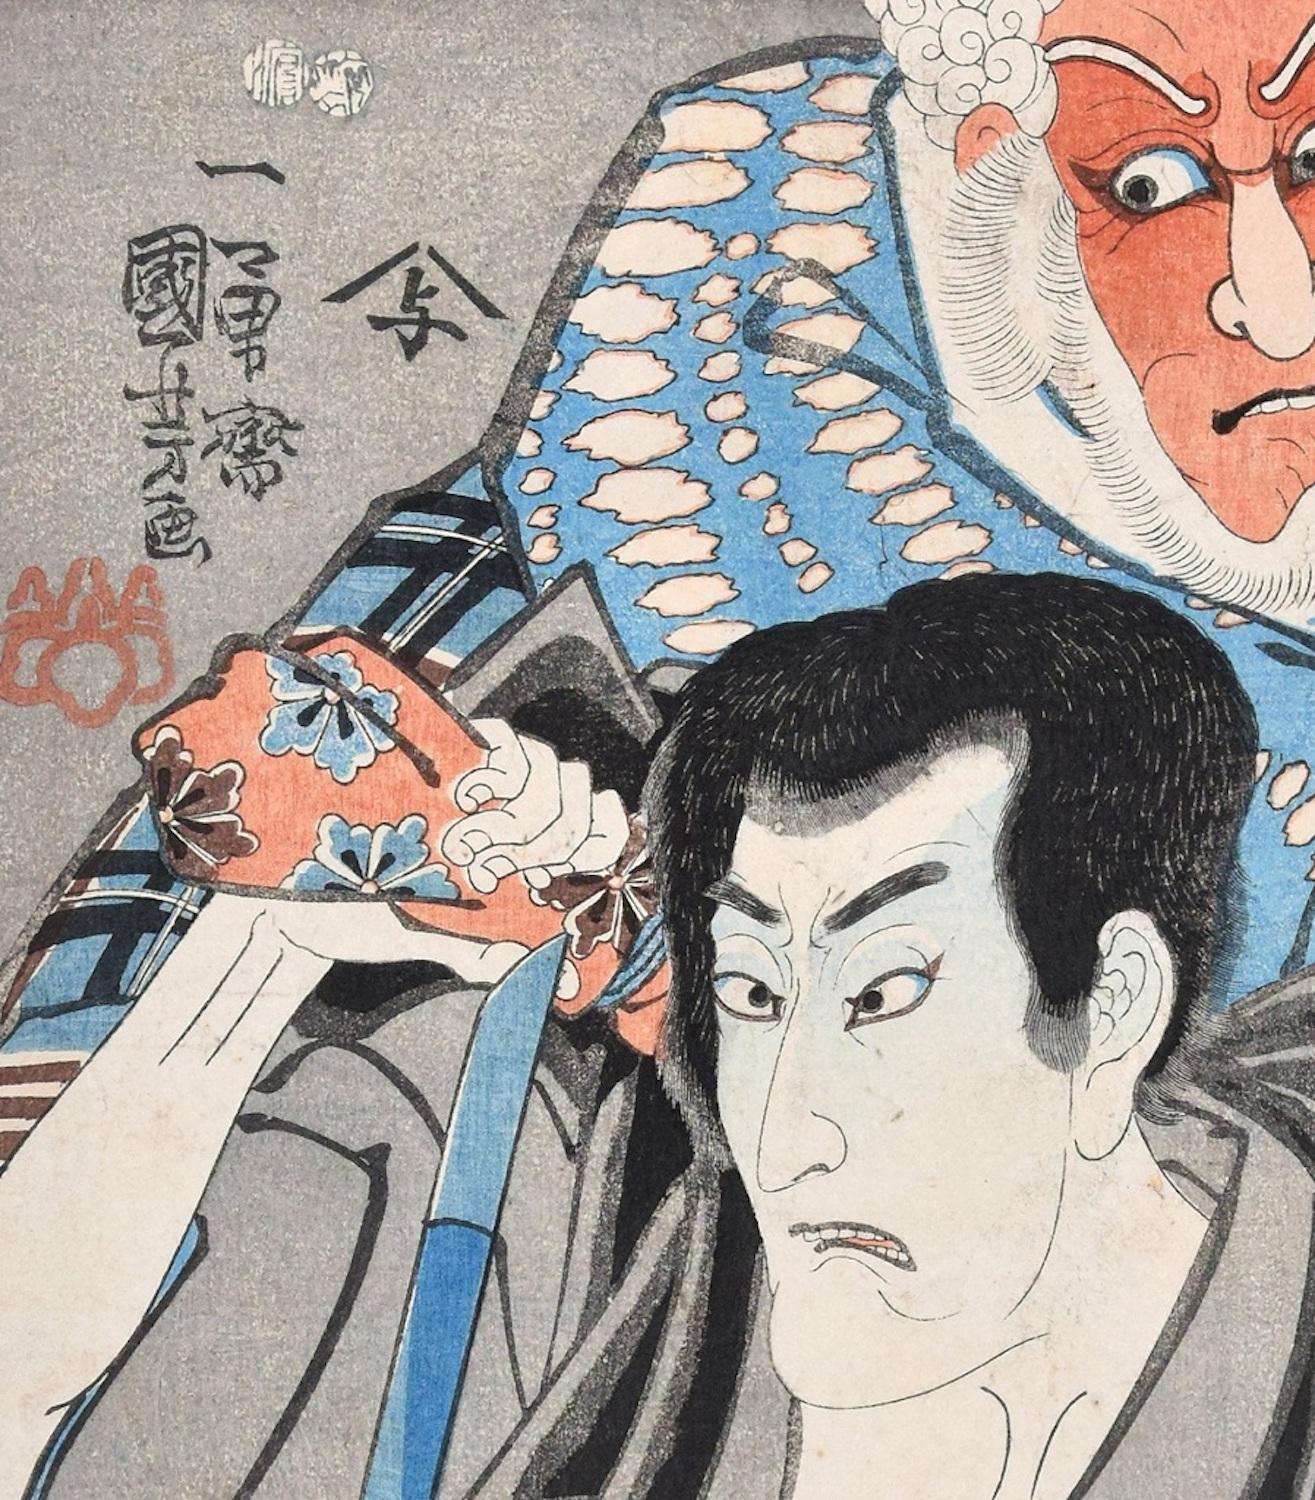 Kabuki Scene: a Revenge Story - Woodcut by U. Kuniyoshi - 1846/52 - Print by Utagawa Kuniyoshi